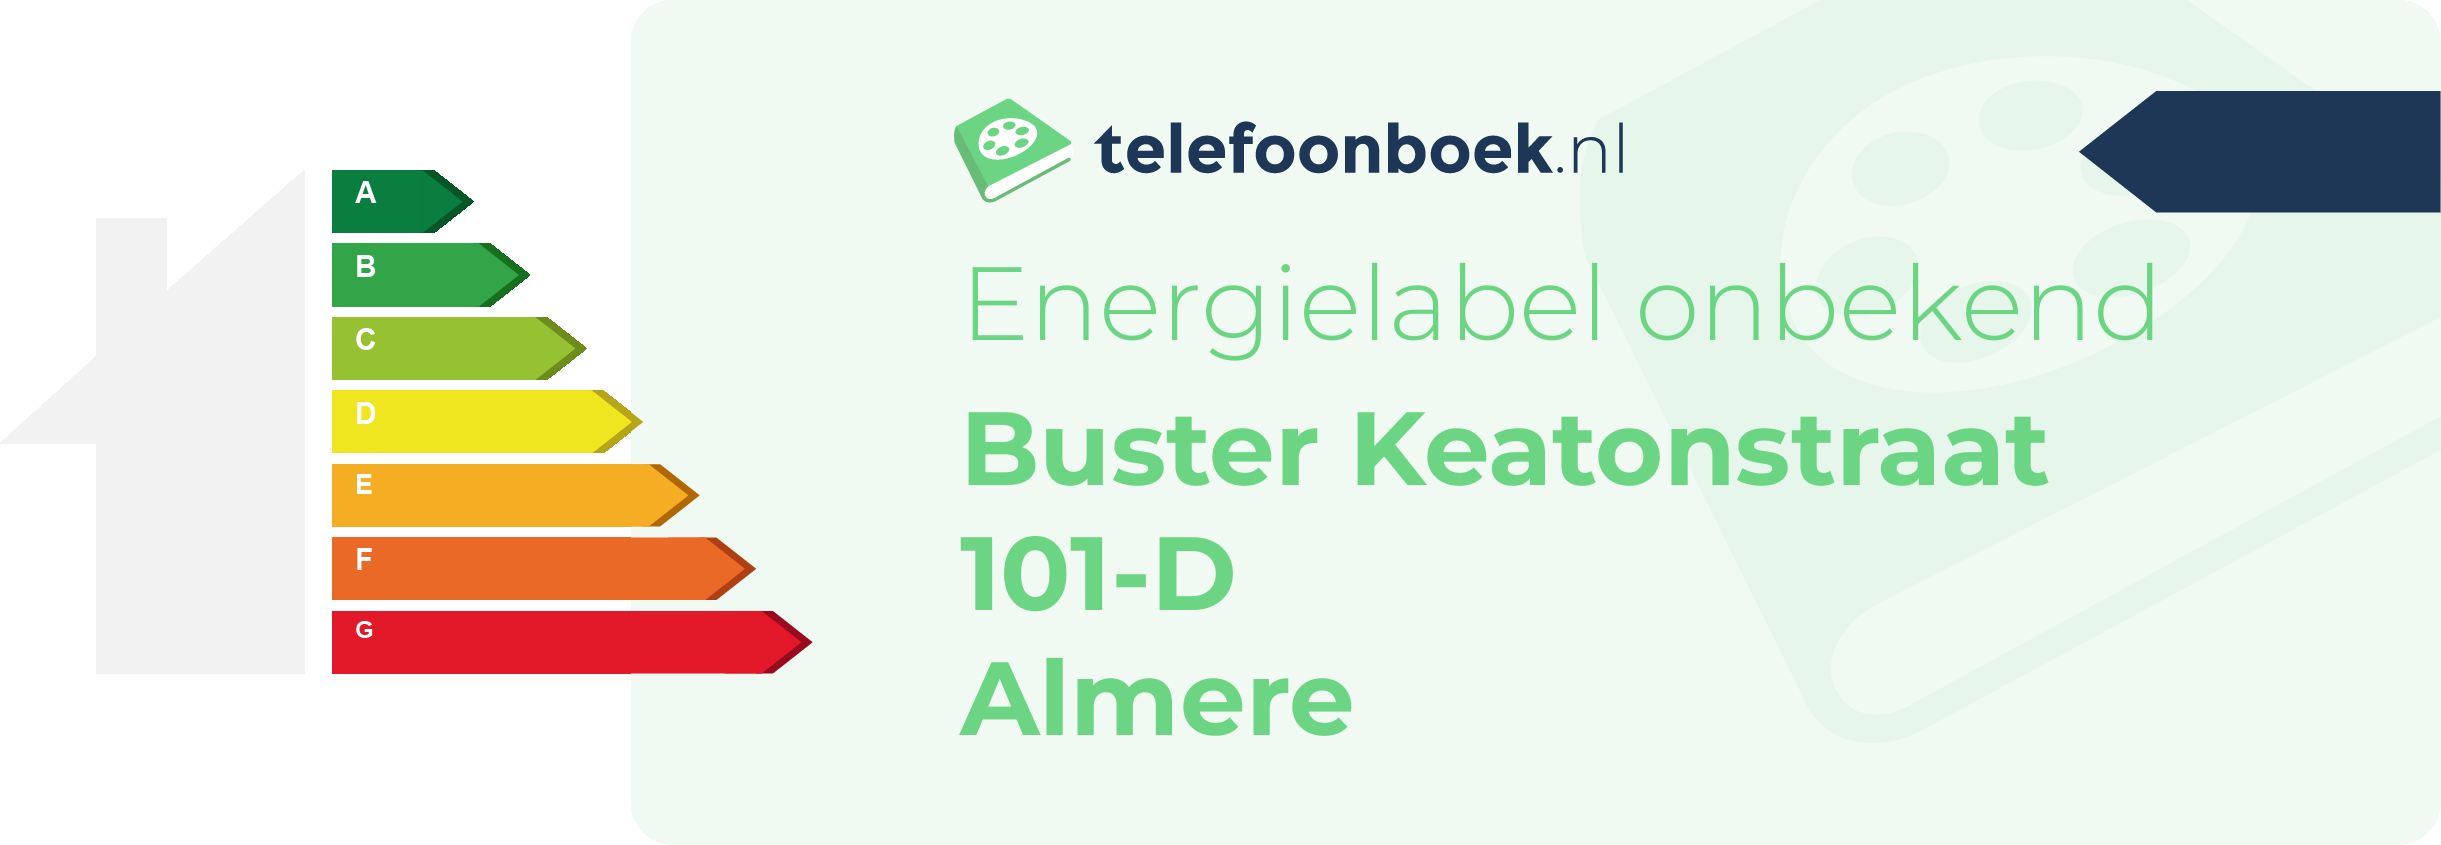 Energielabel Buster Keatonstraat 101-D Almere